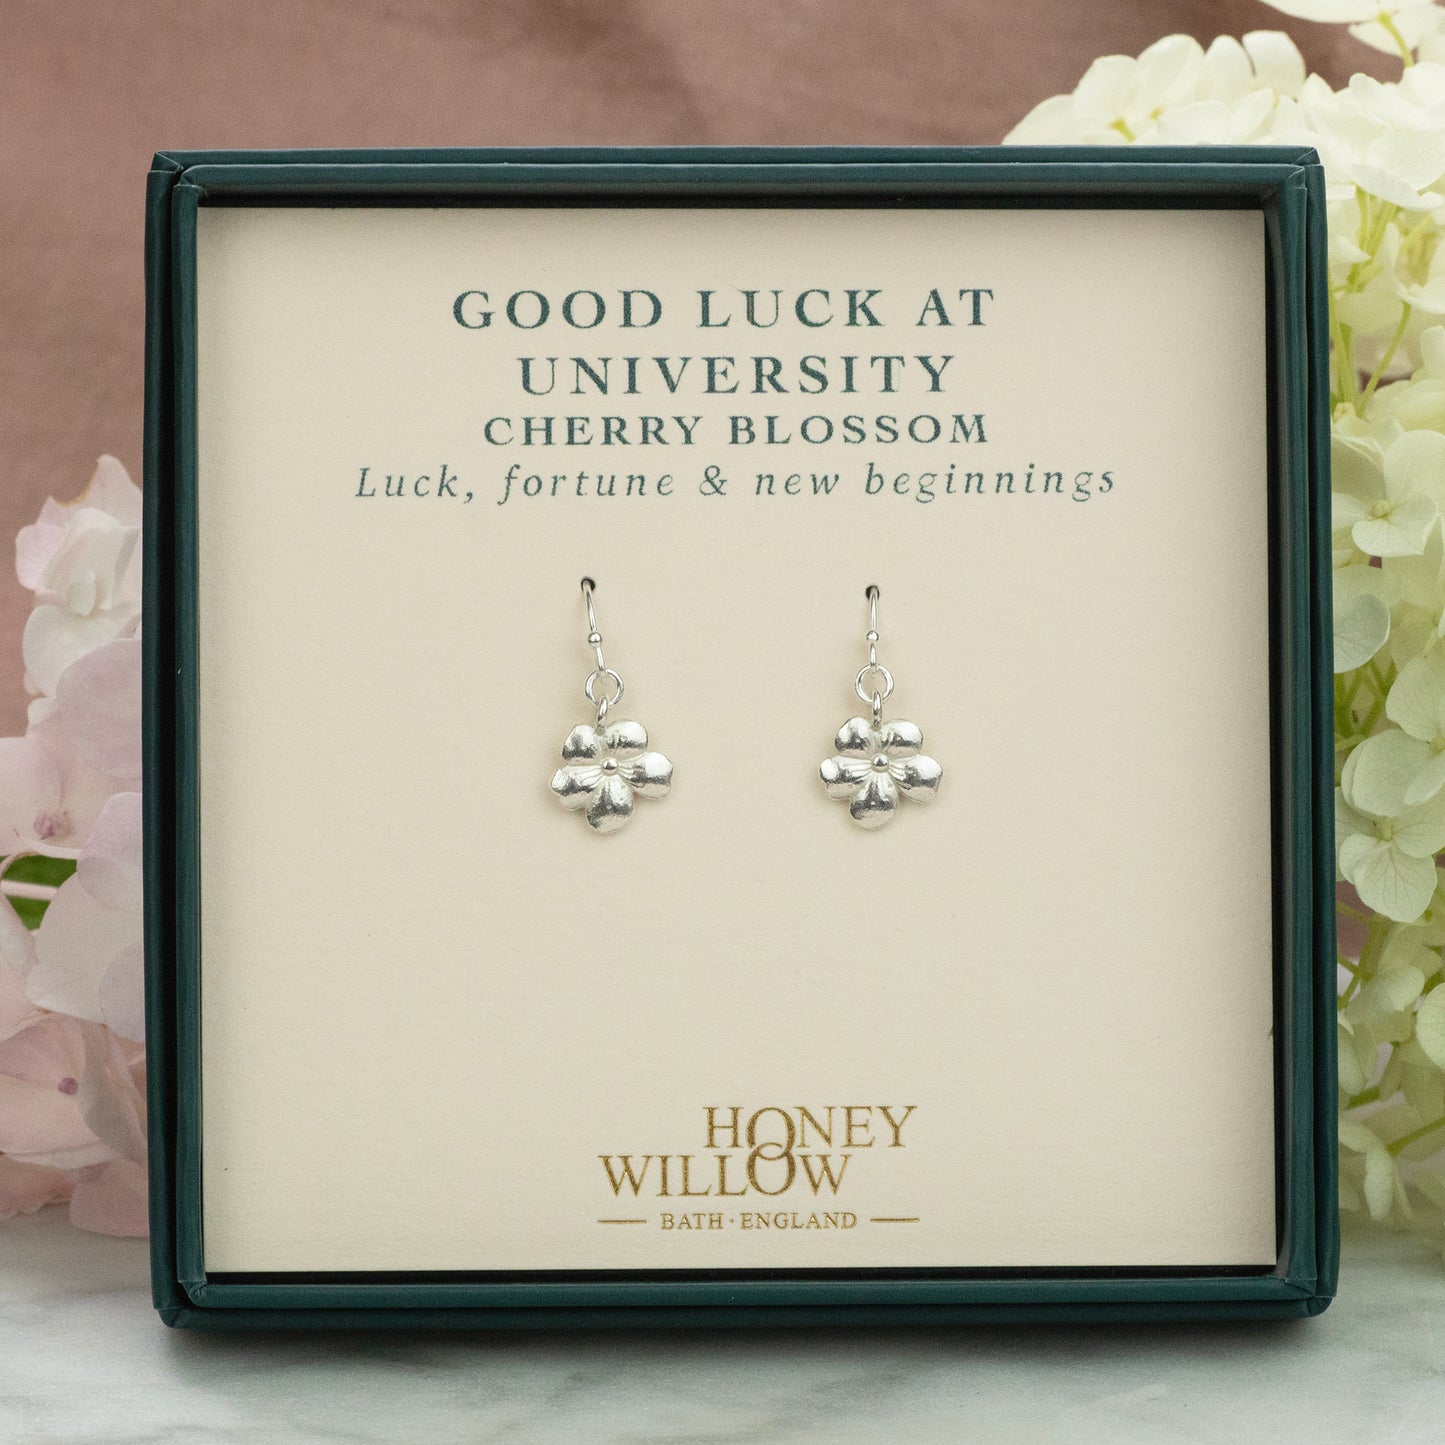 Good Luck Gift for University - Cherry Blossom Earrings - Silver